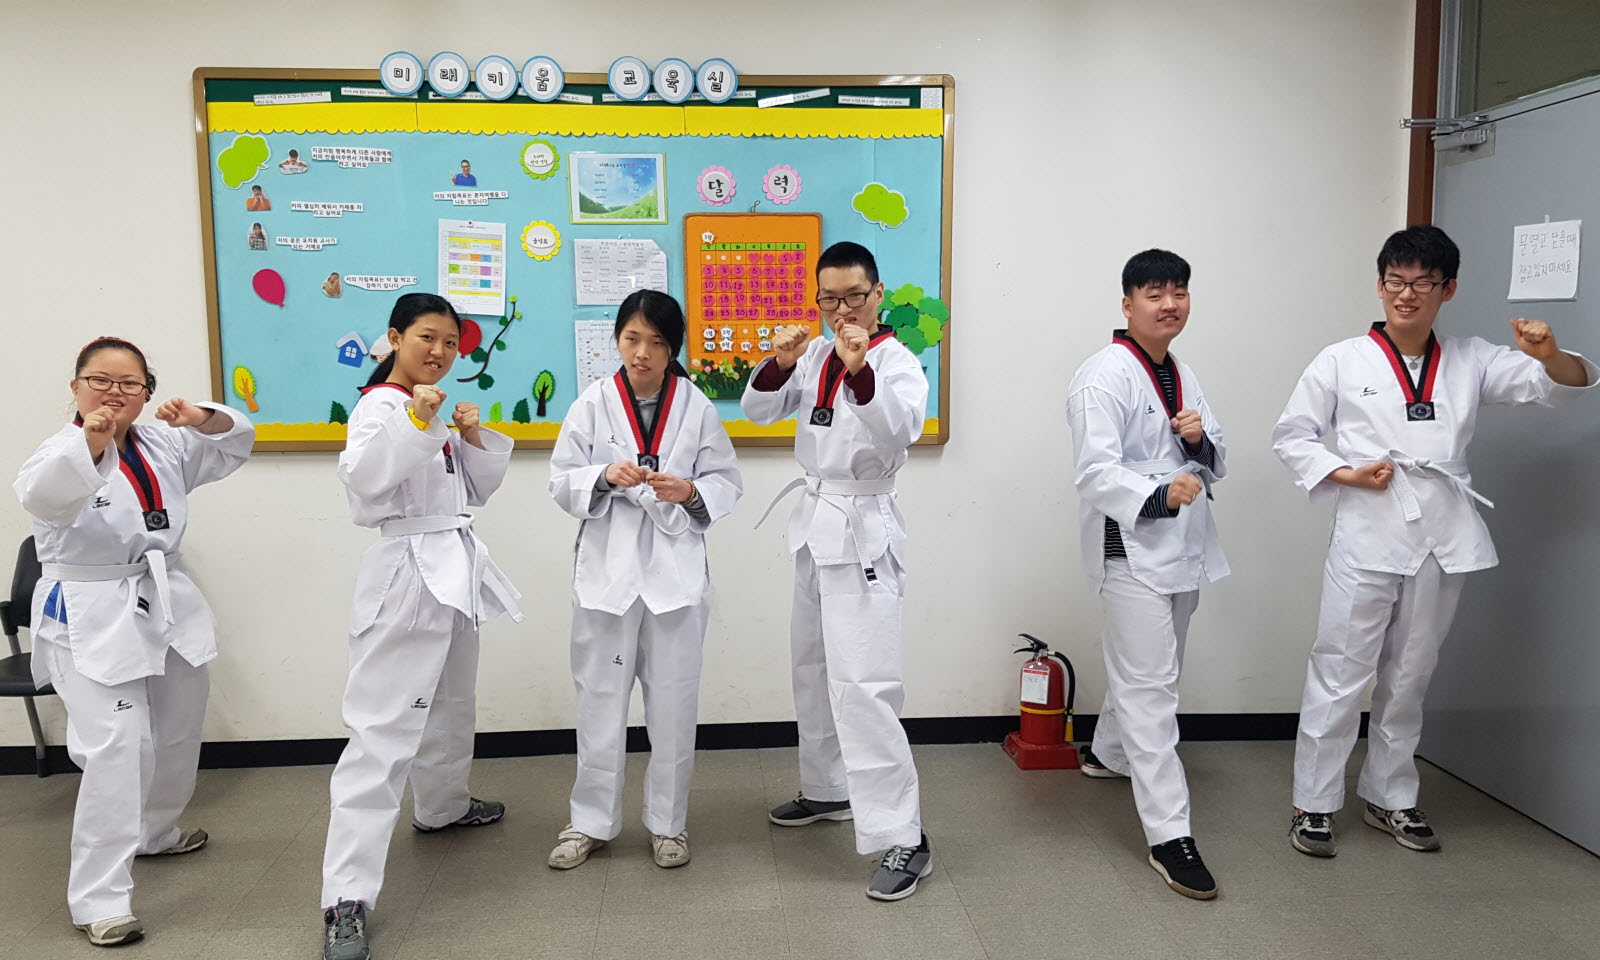 미래키움교육실 교육생들이 도복을 입고 단체사진을 찍고 있다.